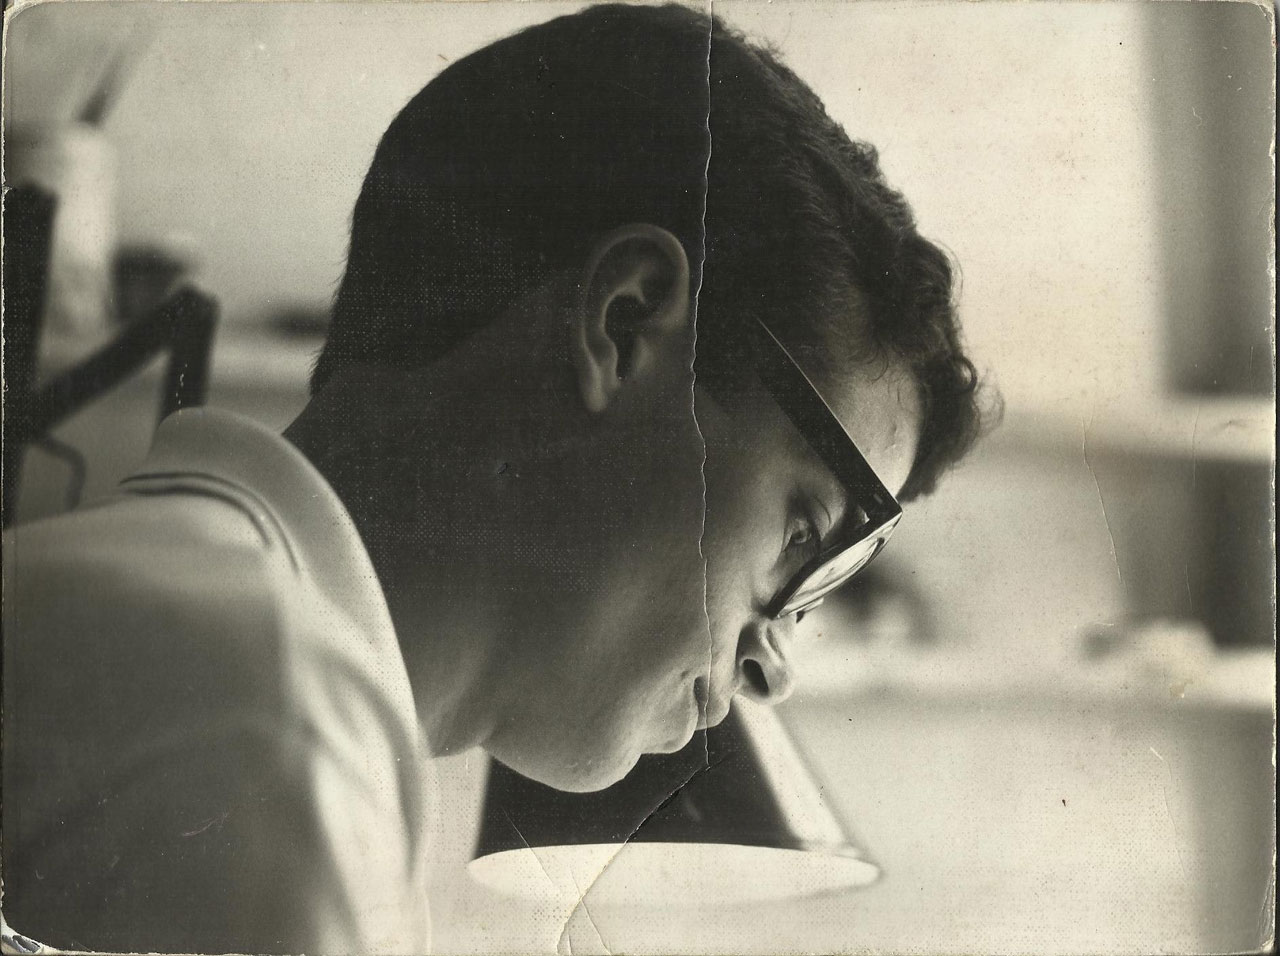 Gassent en agencia Alas (1965). Fotografía de Luis Gironés.